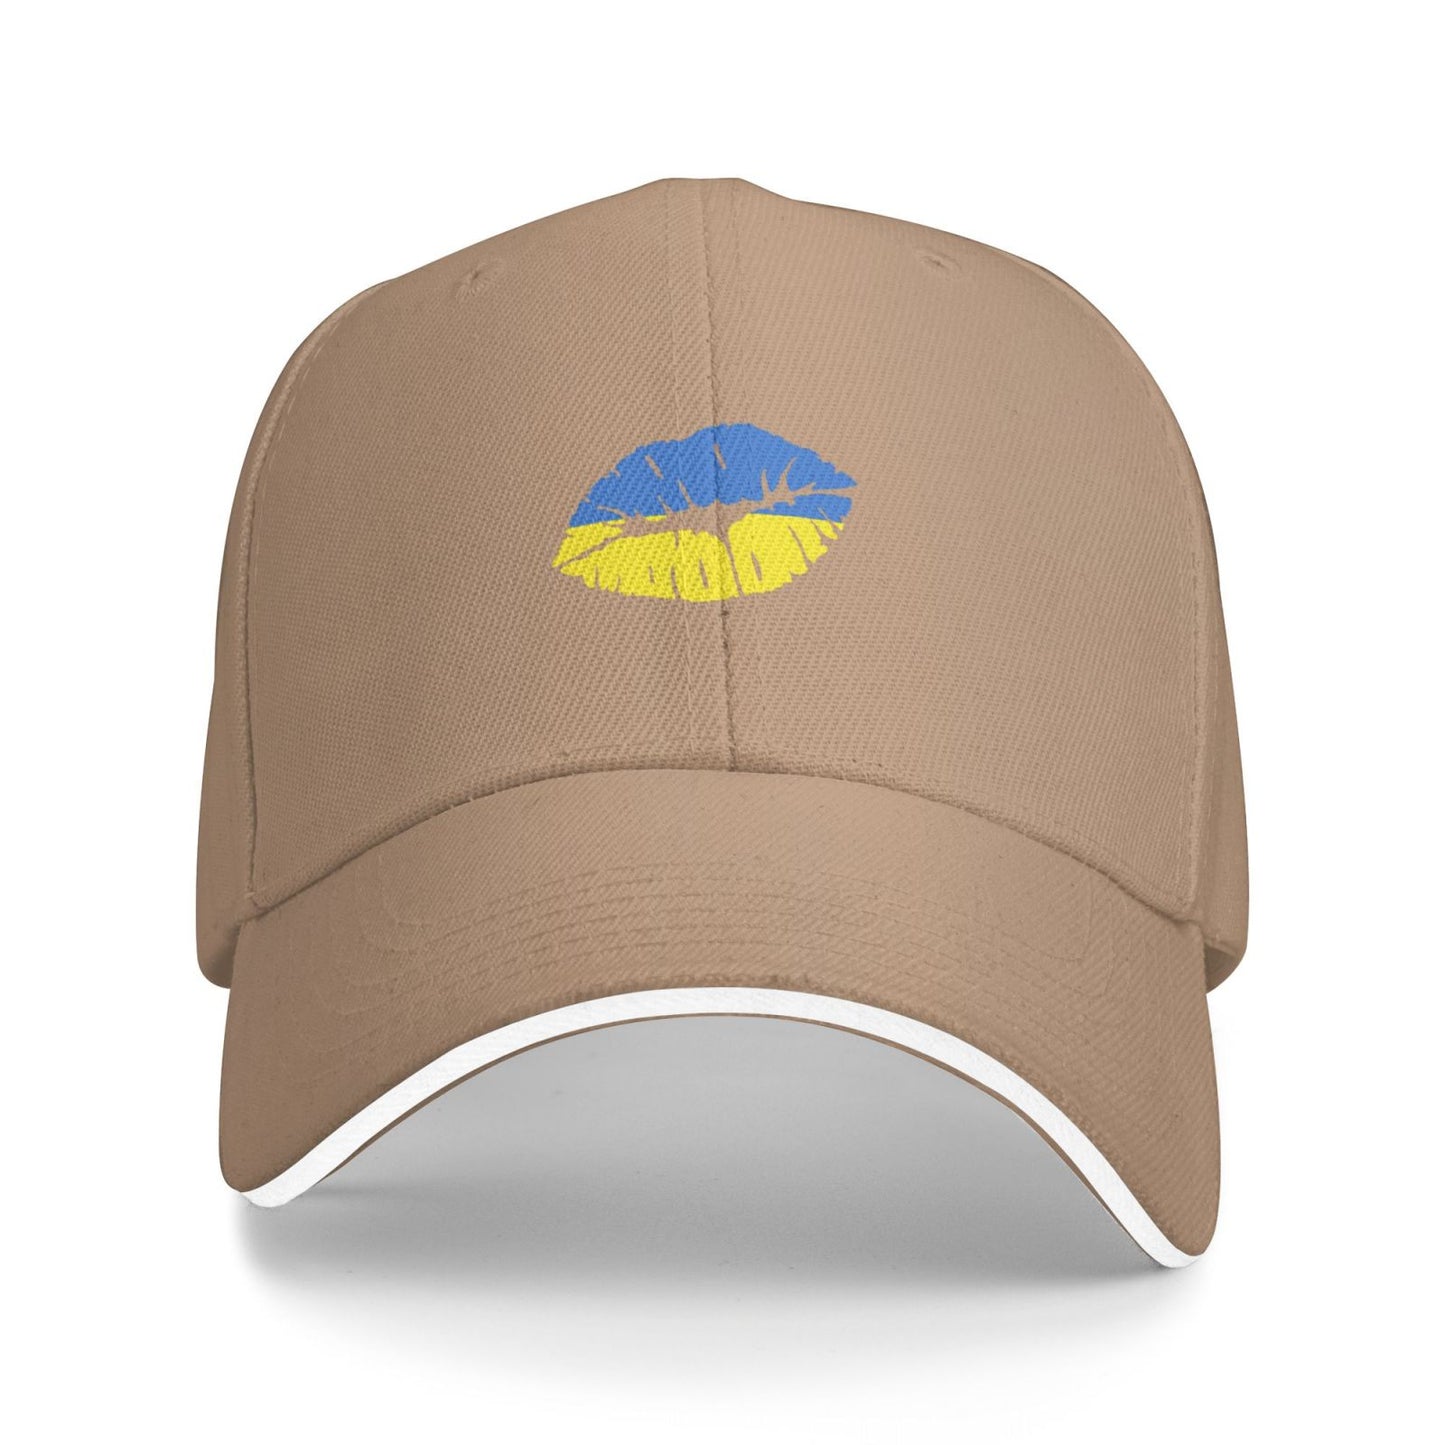 Ukraine Flag Unisex Hats Fashion Adjustable Baseball Cap for Men Women